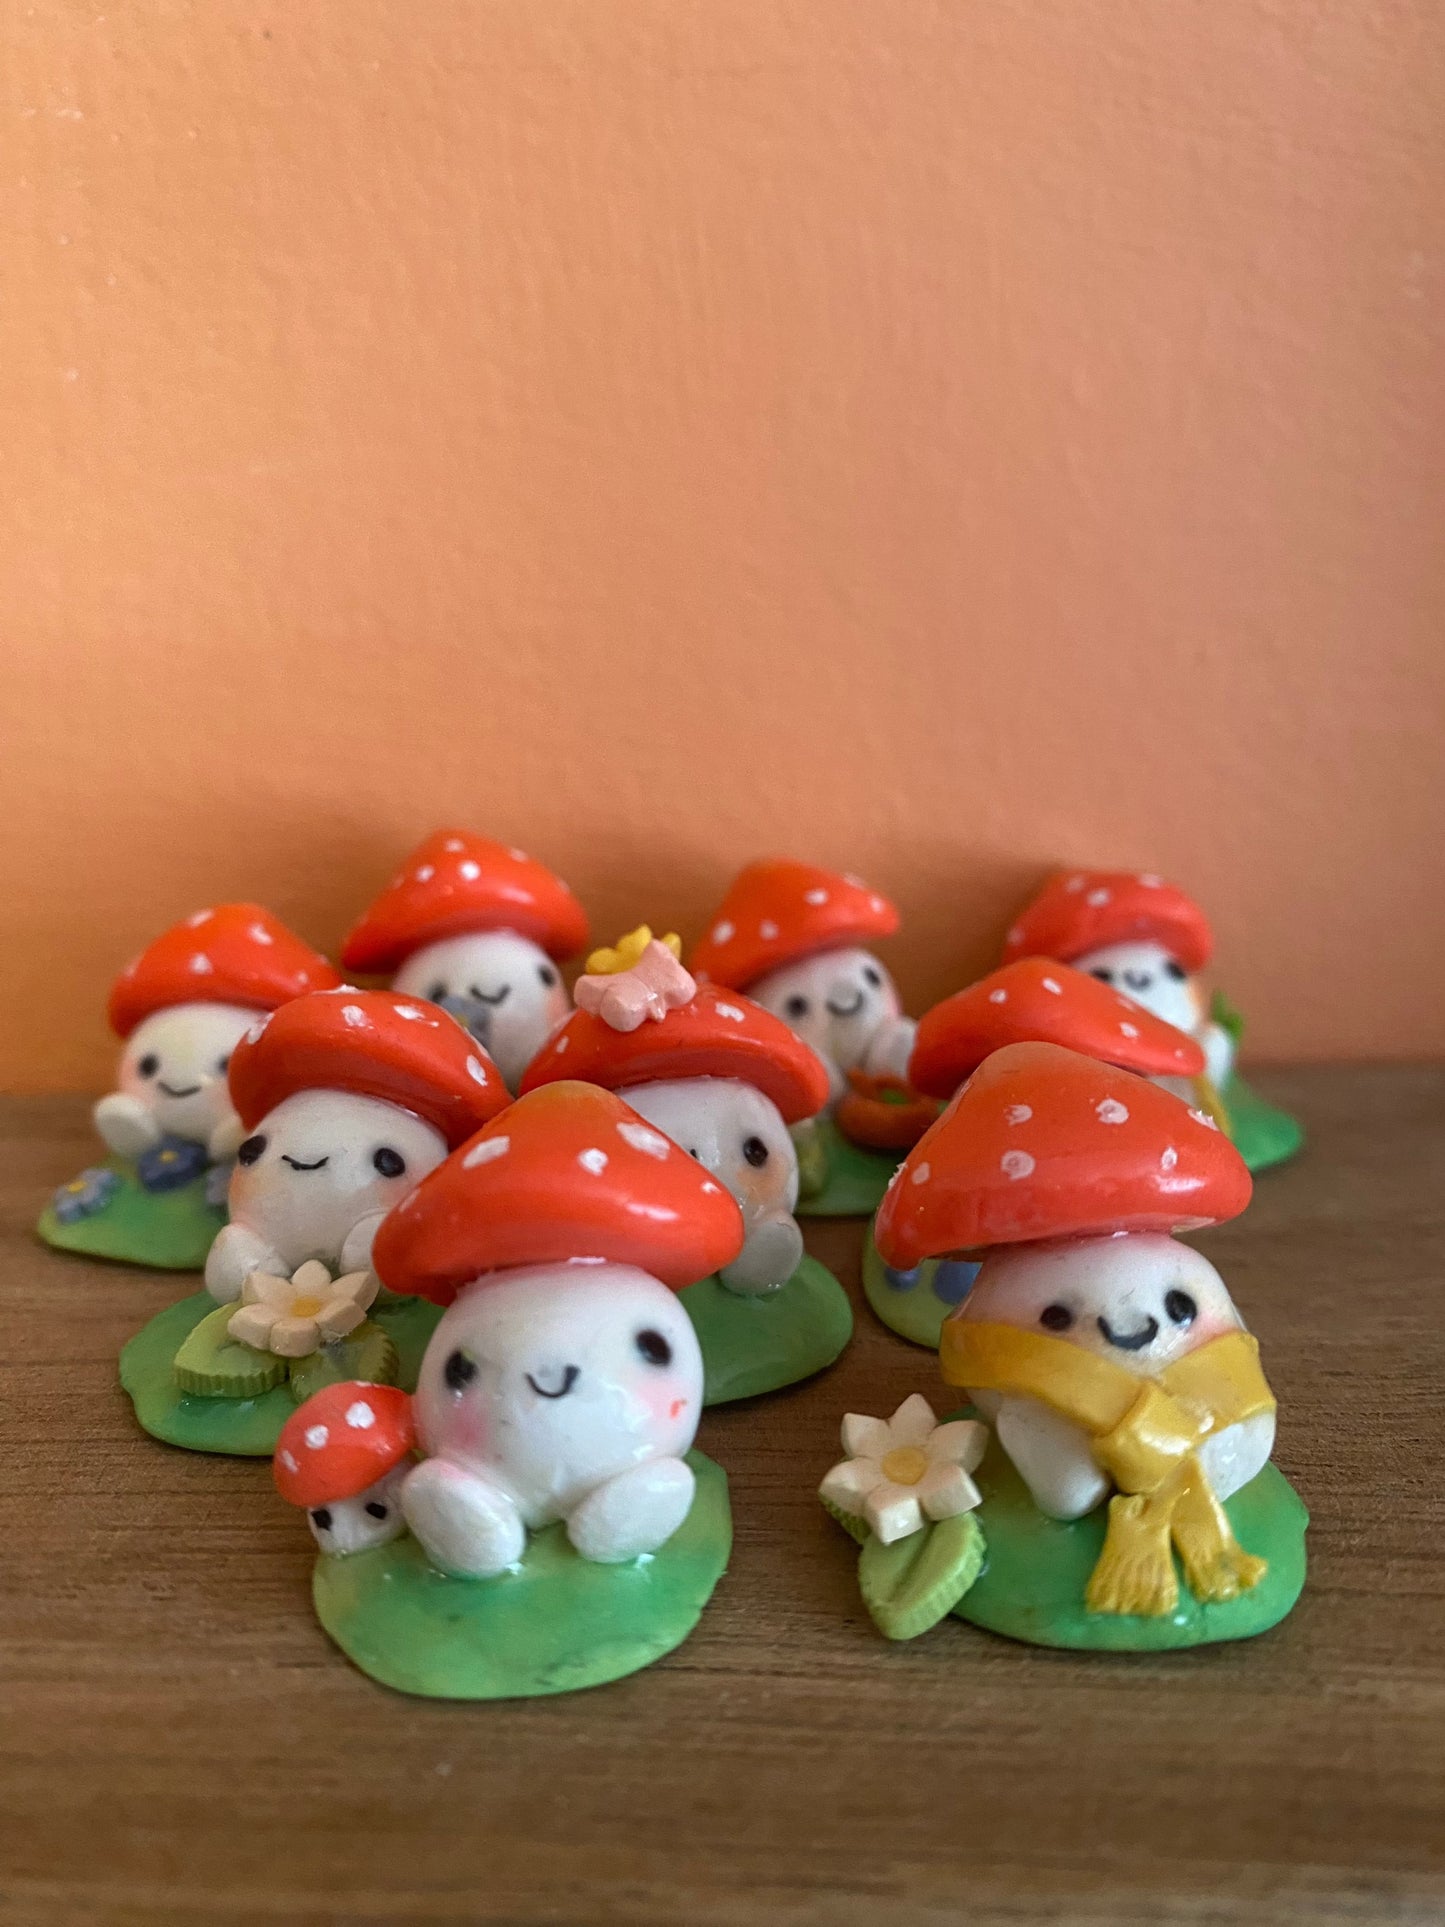 Sweet little mushroom desk buddies